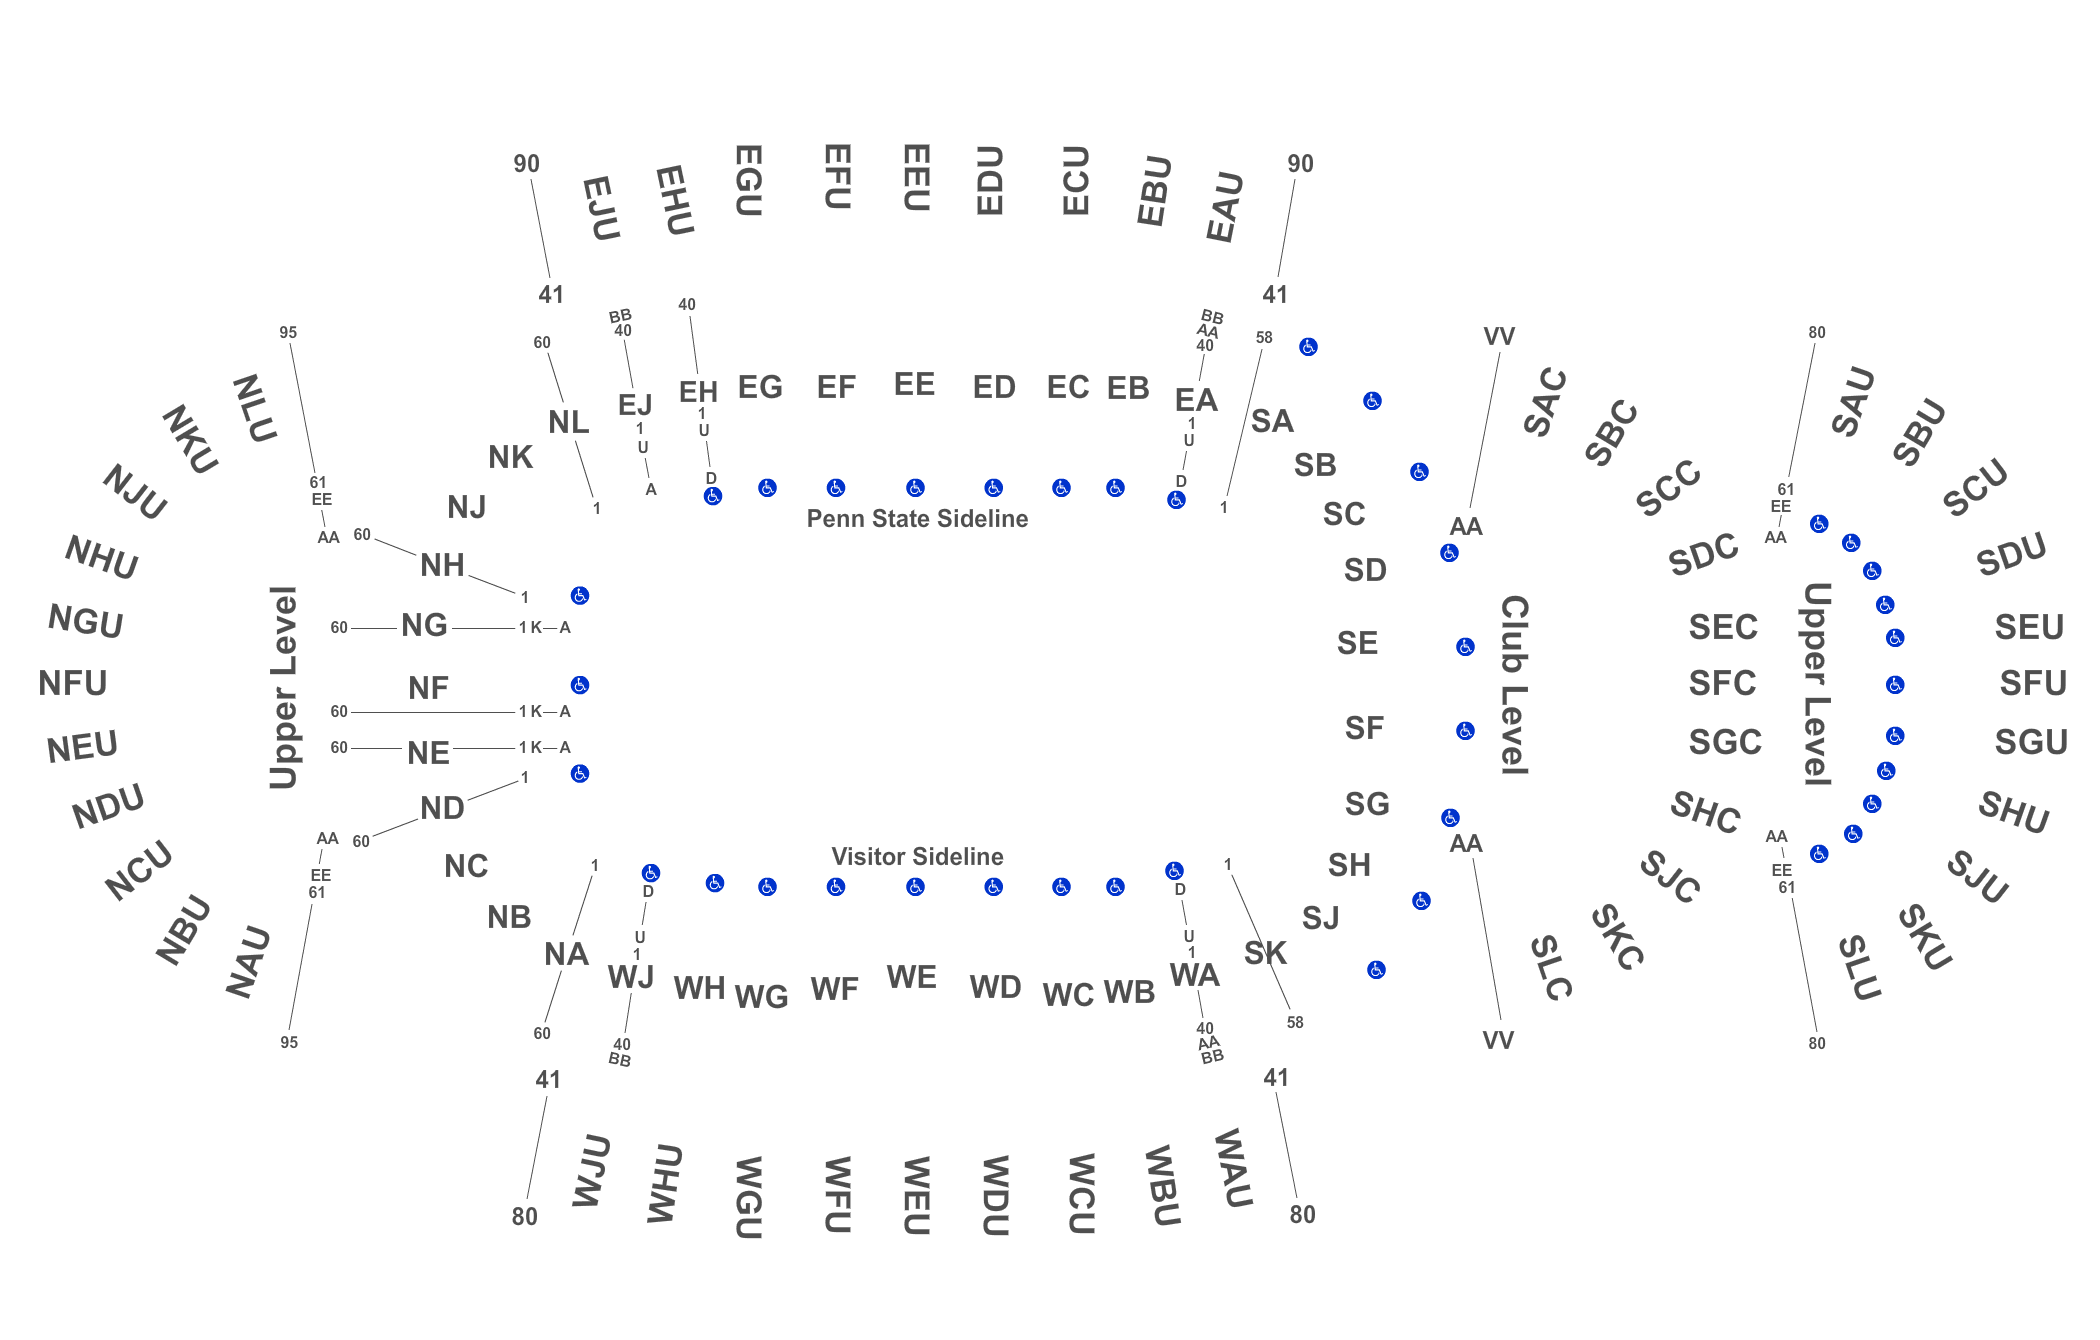 Beaver Stadium Seating Chart 2019